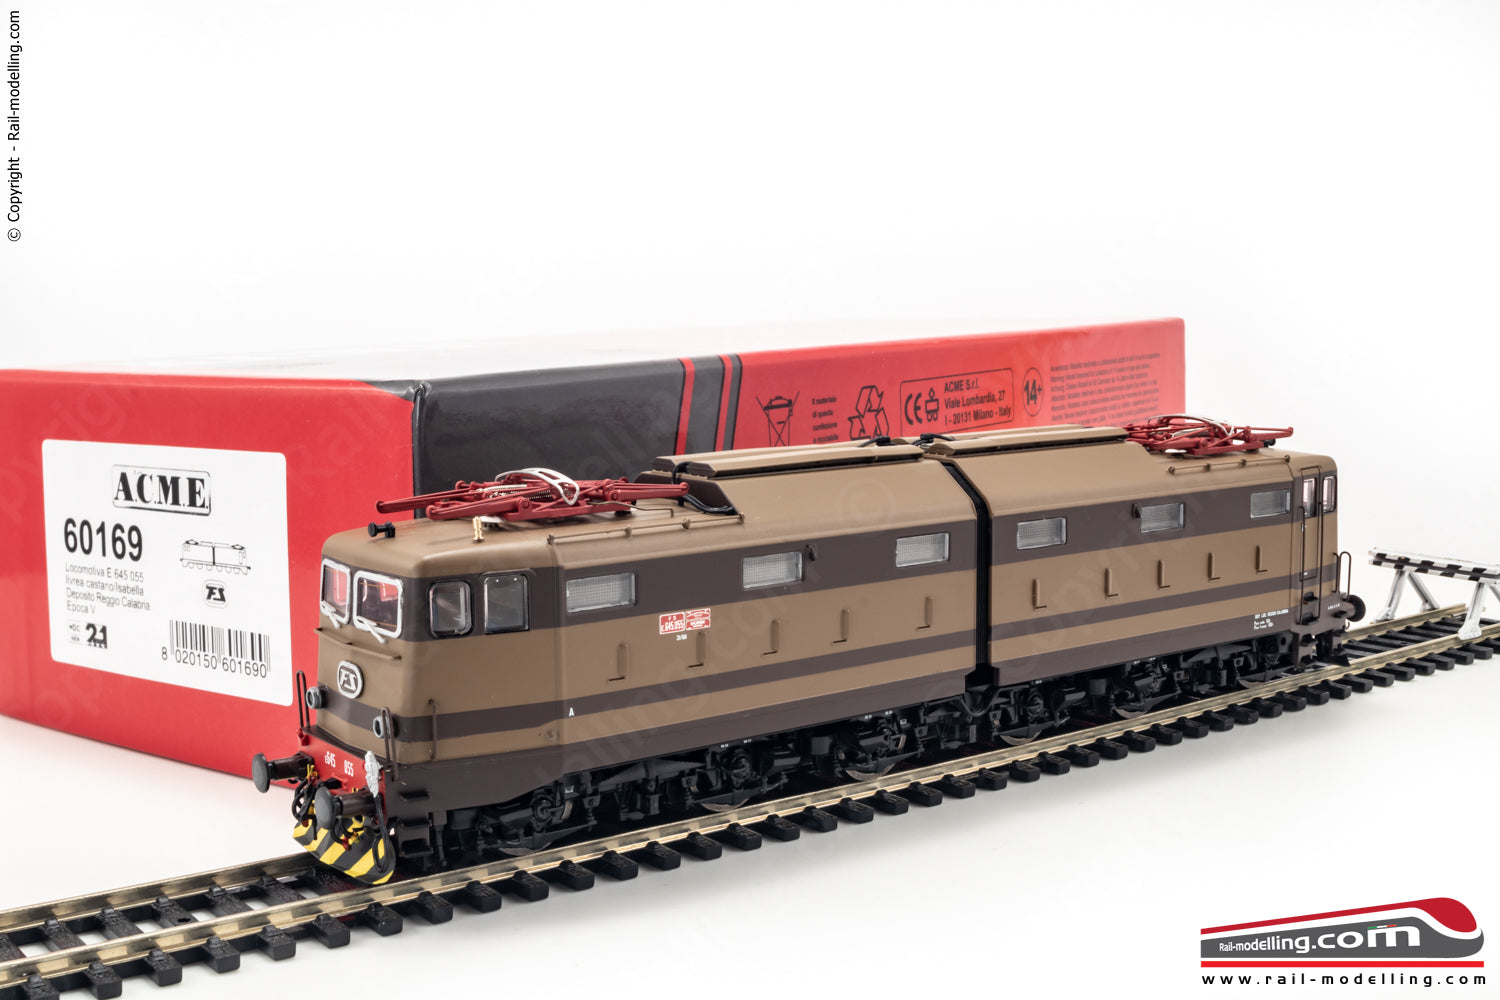 ACME 60169 - H0 1:87 - Locomotiva elettrica FS E.645 055 2° serie livrea castano/isabella Ep. V